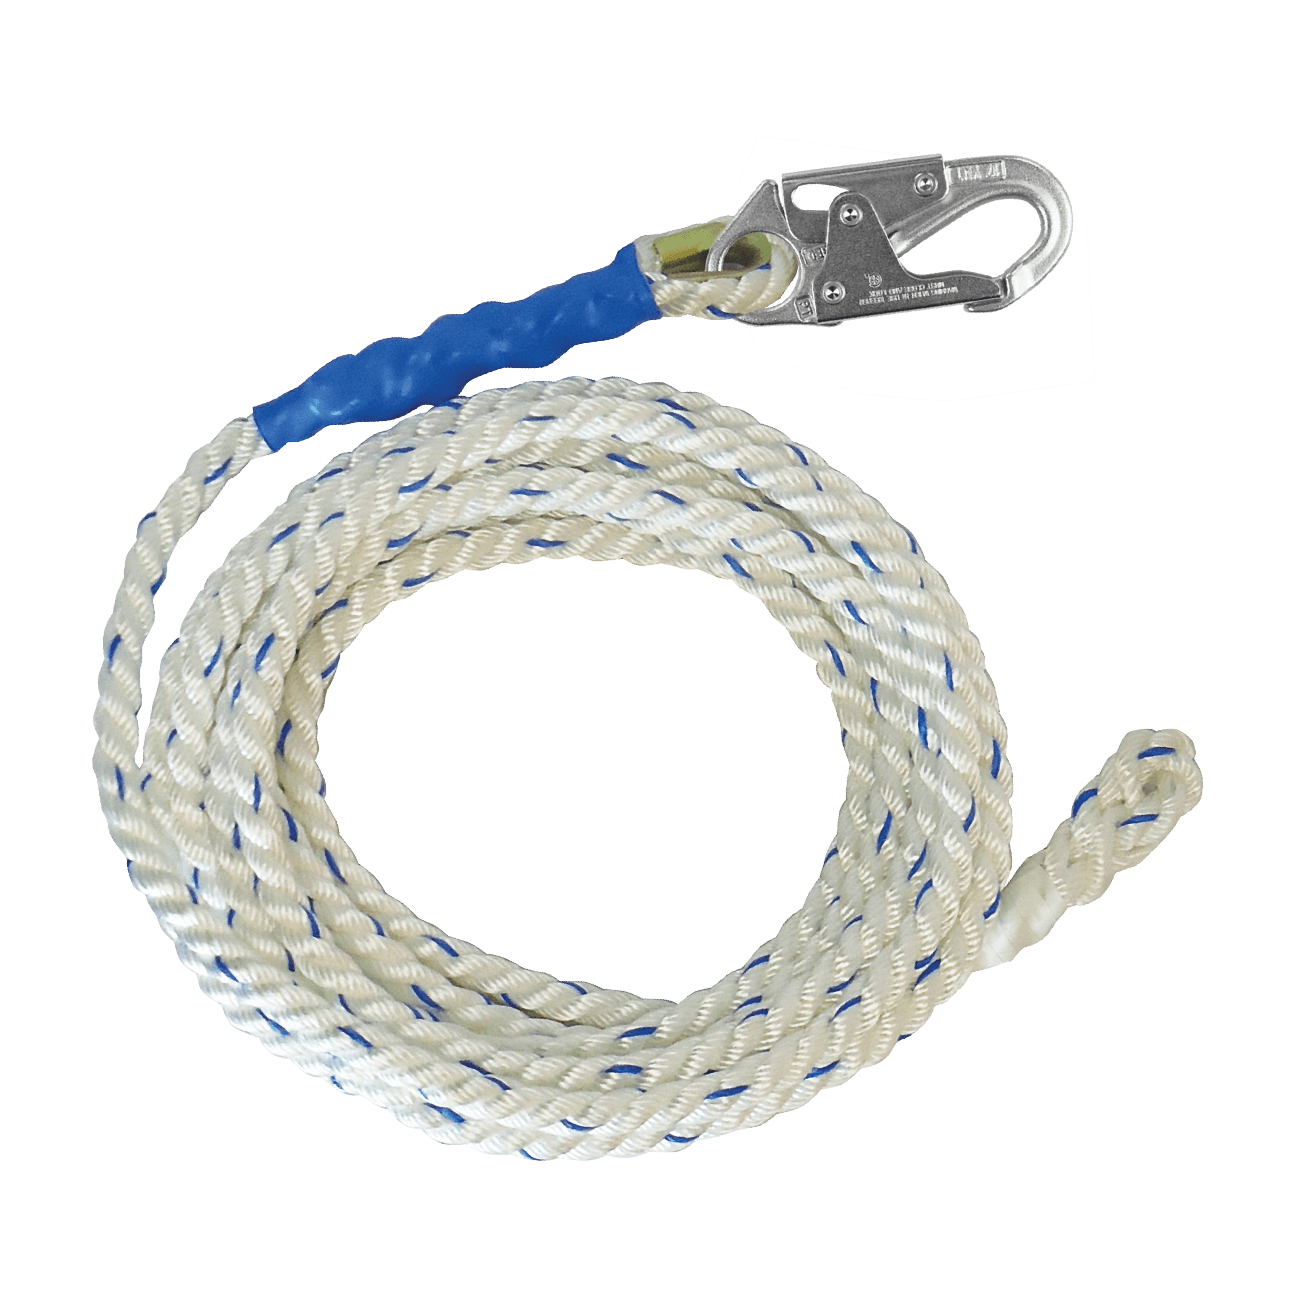 Cuerda salvavidas vertical de poliéster de 75' 5/8" con gancho de seguridad (no incluye agarrador de cuerda)